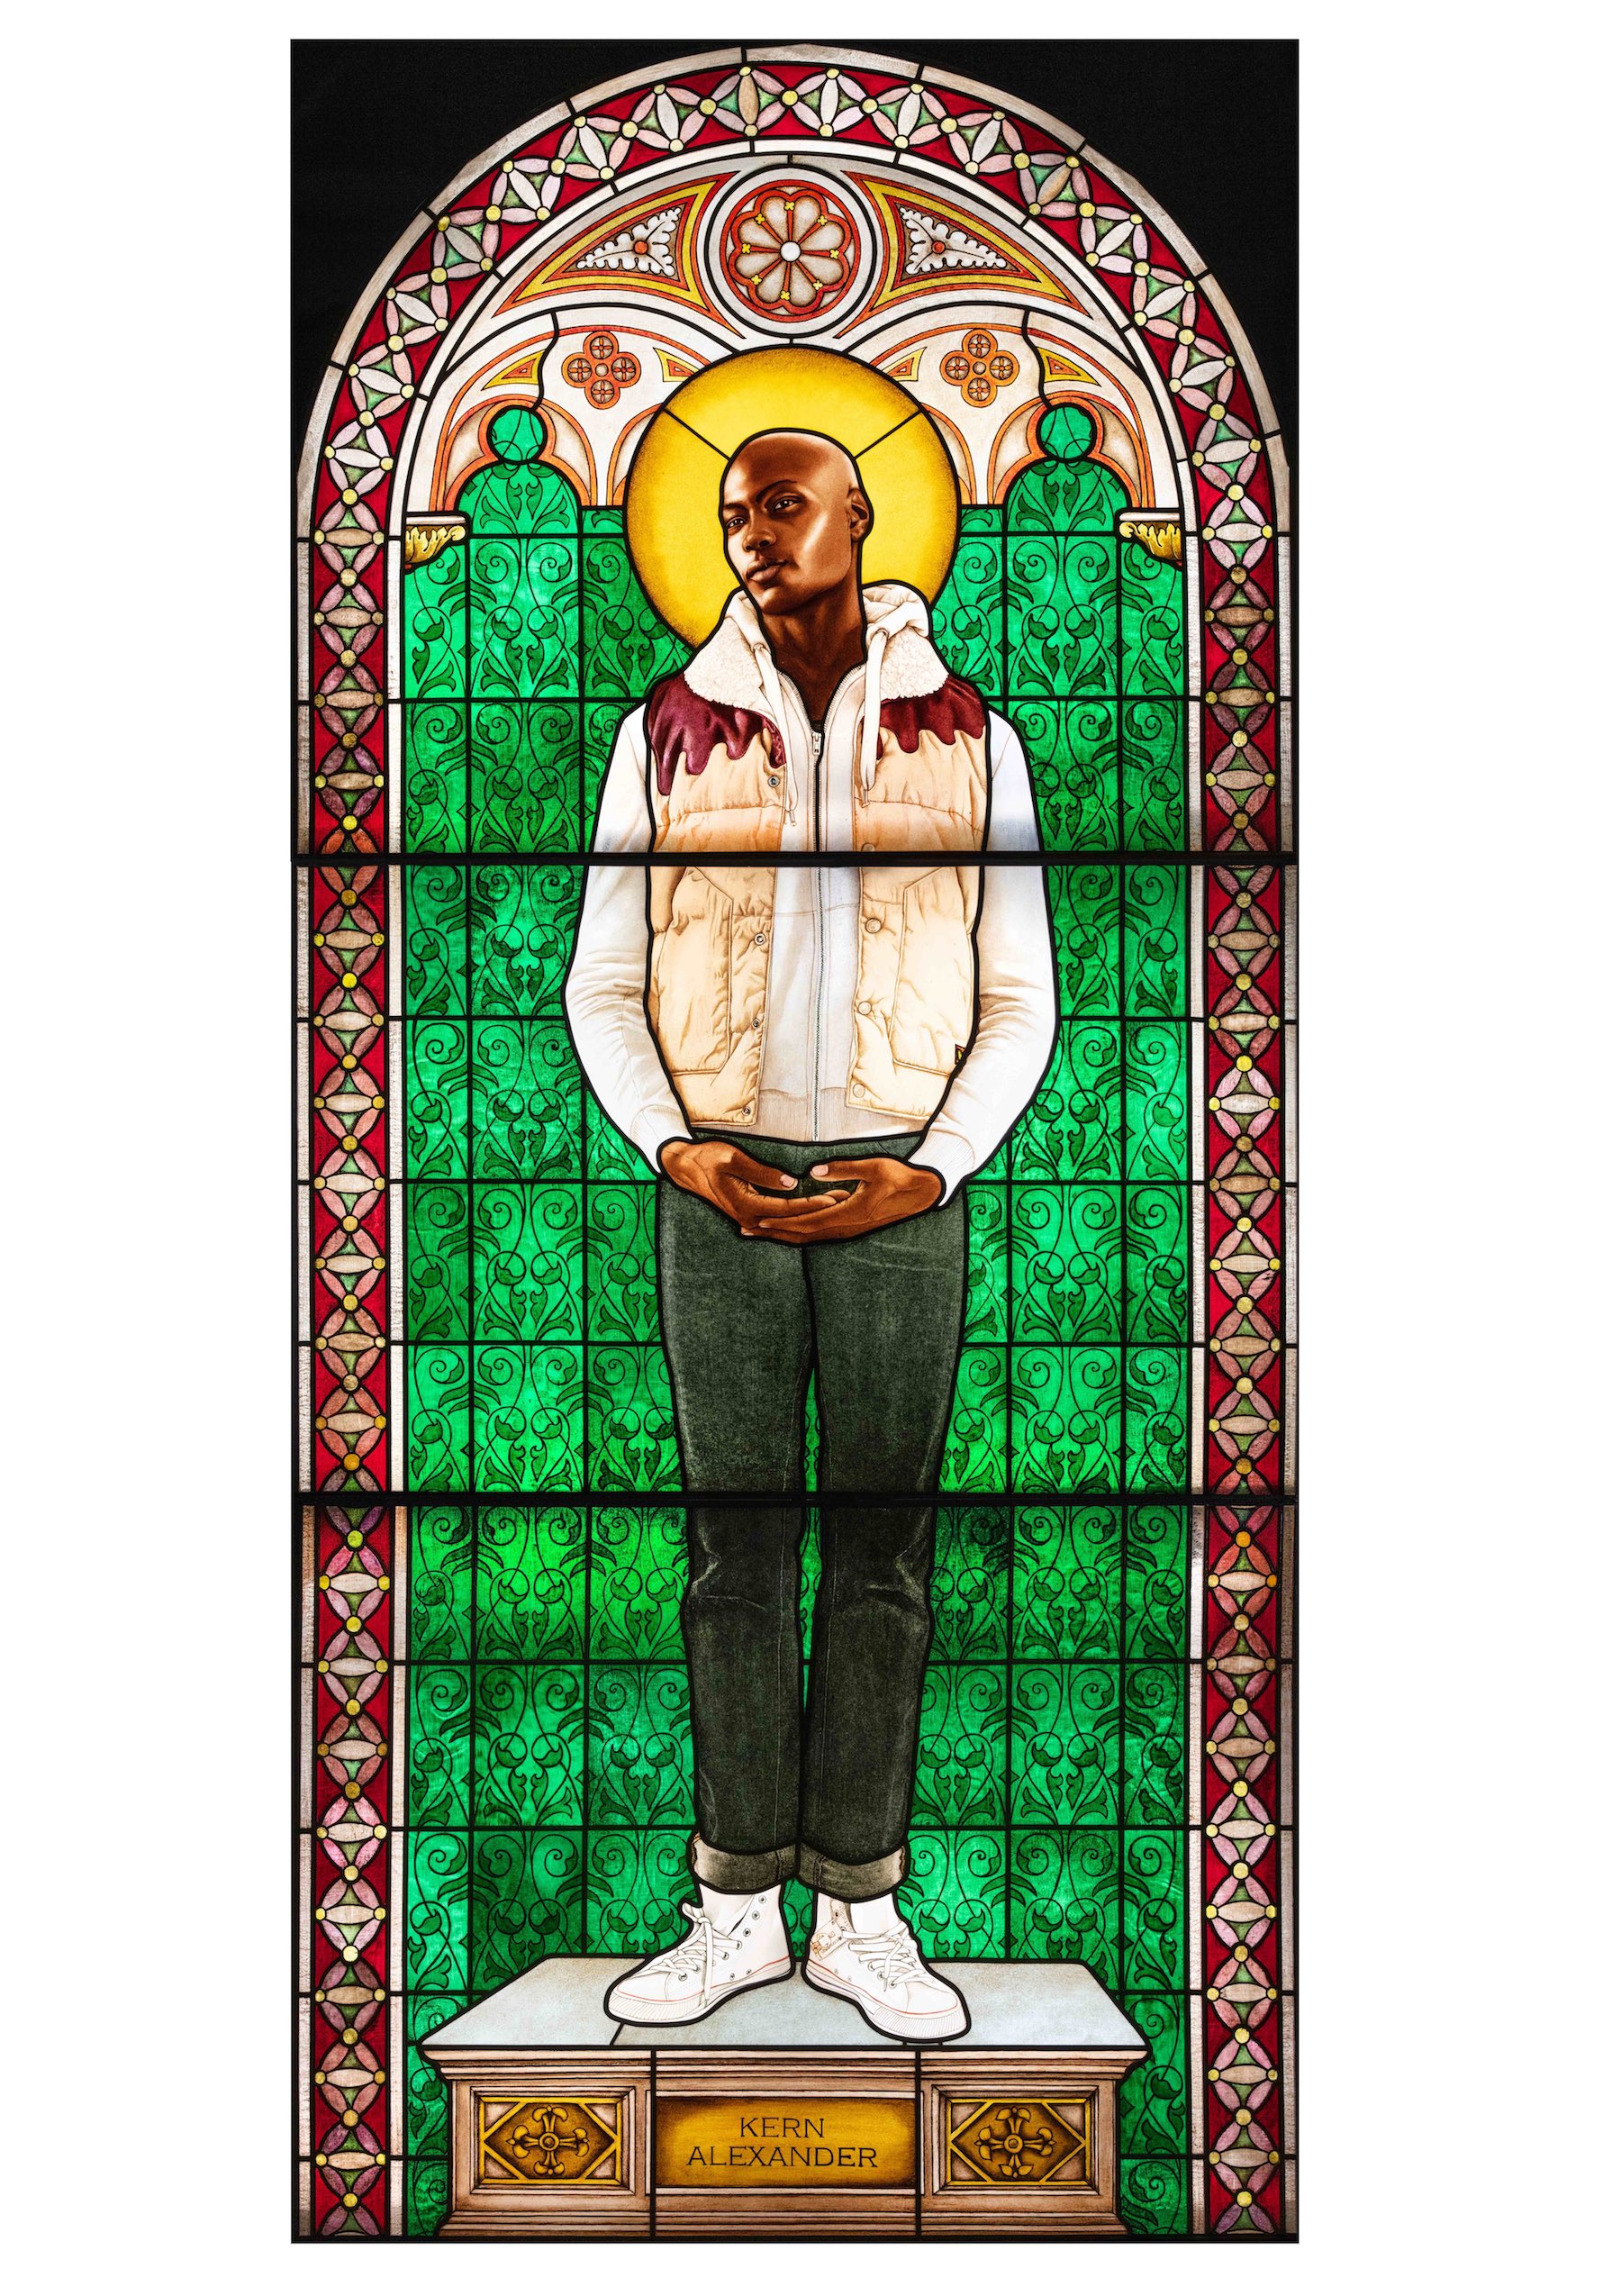 Kehinde Wiley, Saint Amelie, 2014. Vitrail, 251 x 115 cm. Paris, galerie Templon. Photo service de presse © Kehinde Wiley Studio - cliché Elsa